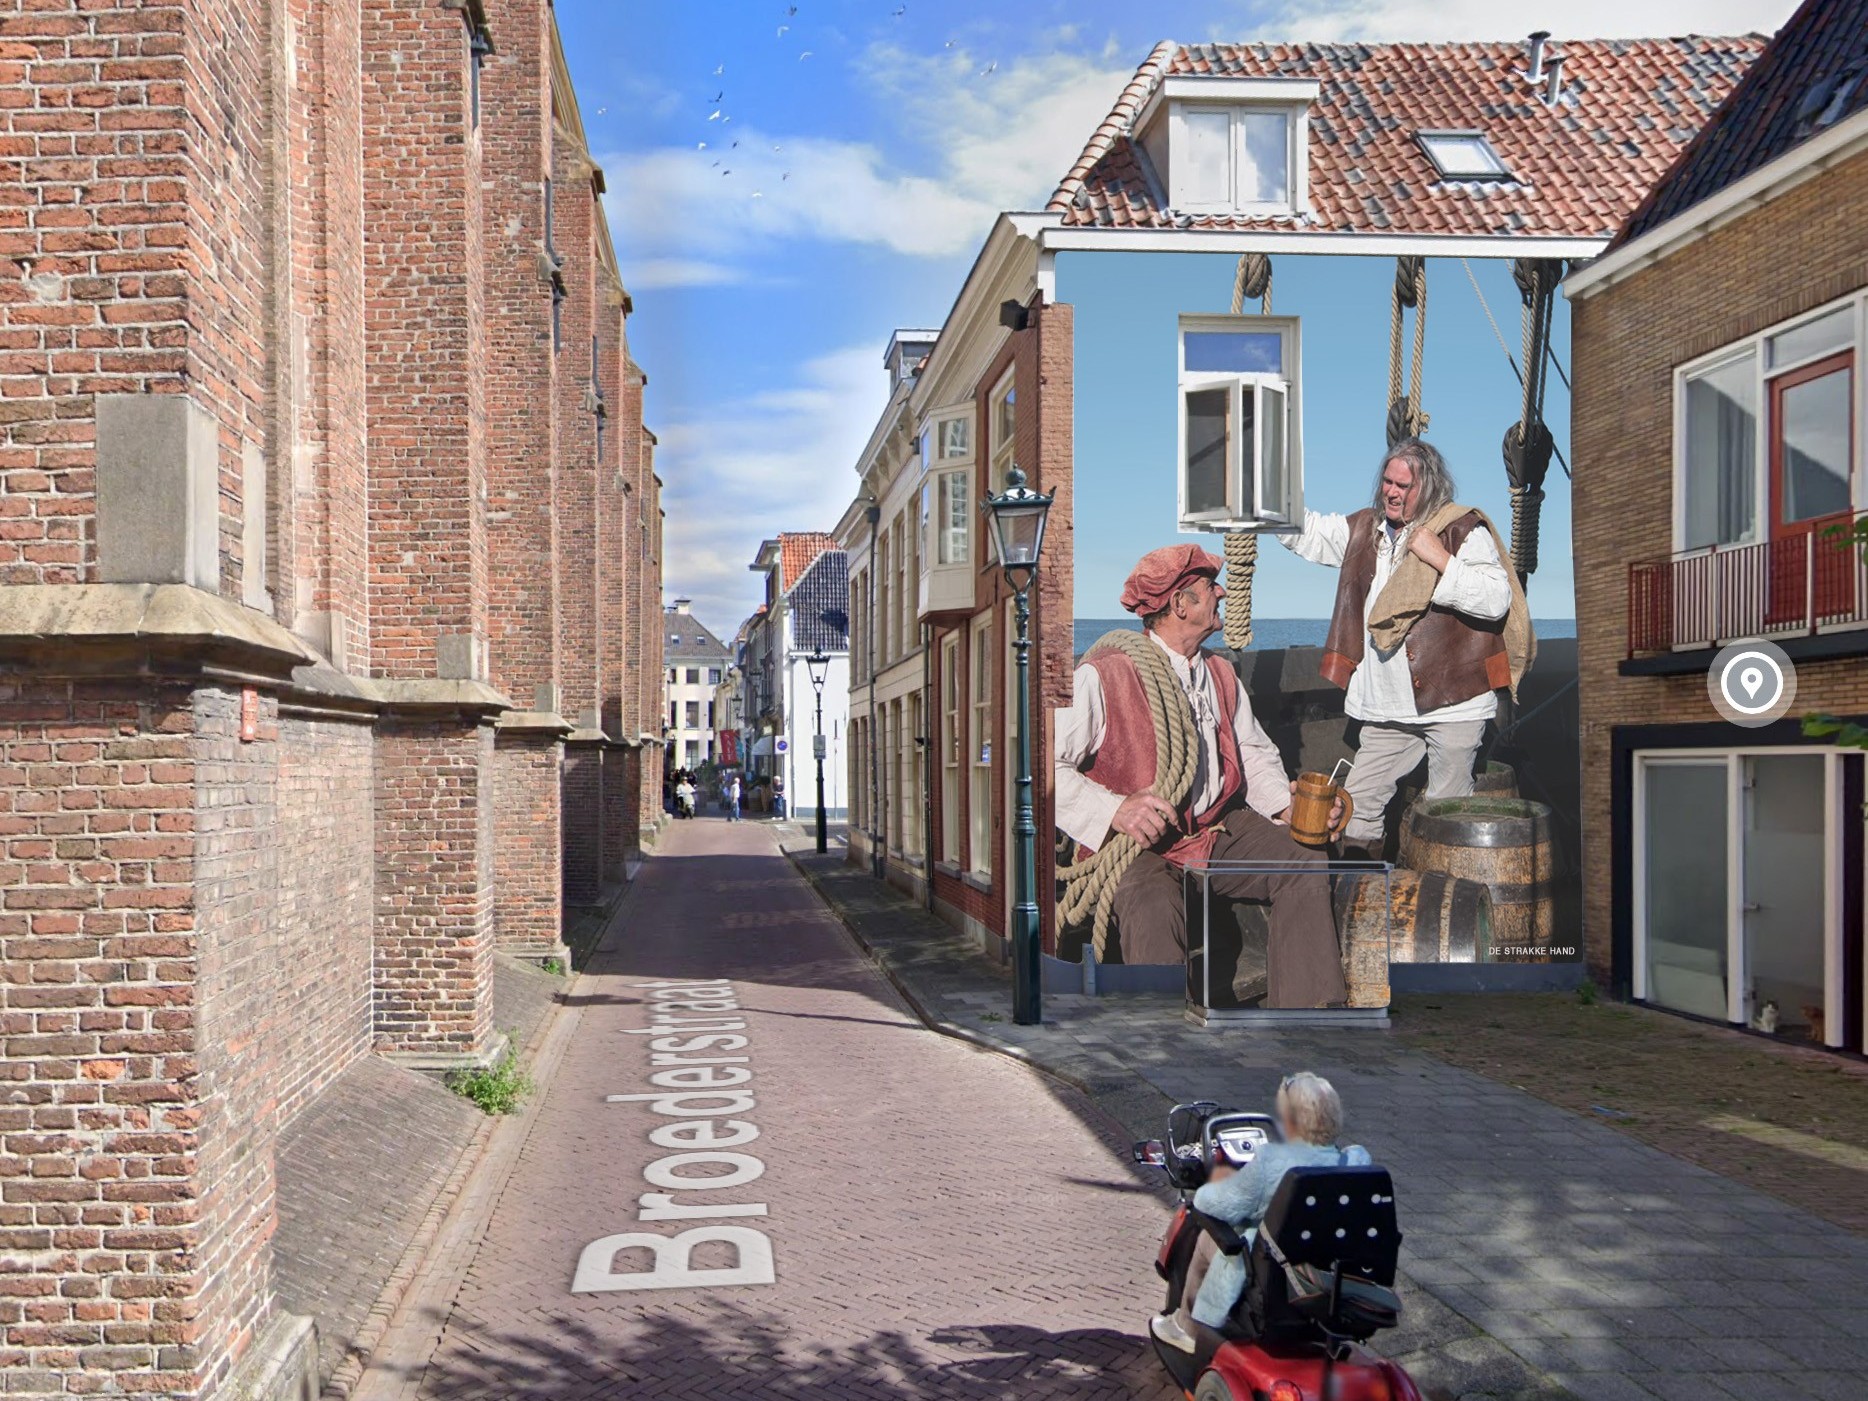 Muurschildering over Hanzetijd straks ook in Hanzestad Kampen